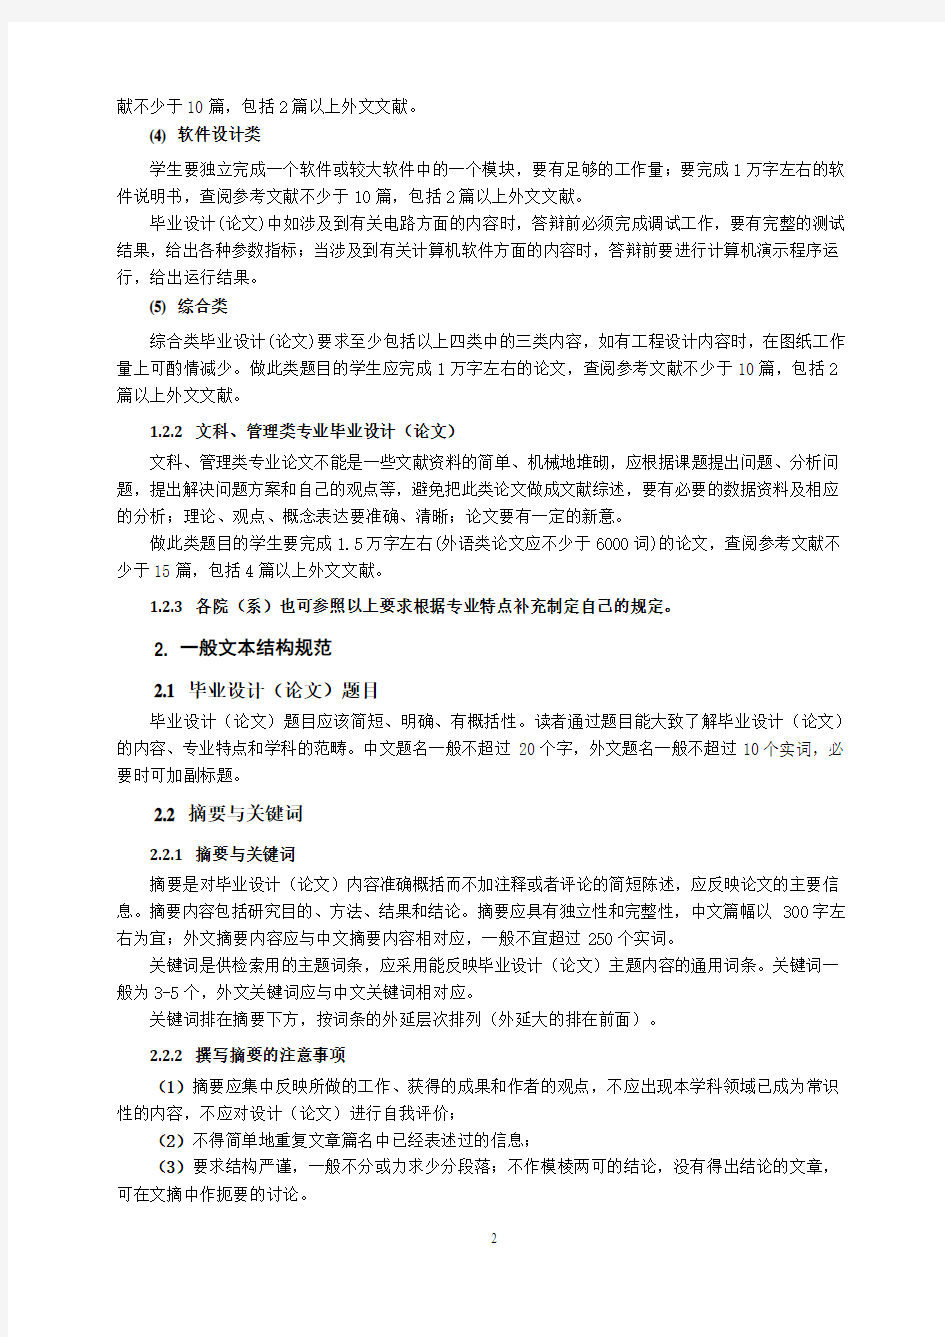 中国石油大学(北京)本科毕业设计(论文)撰写规范